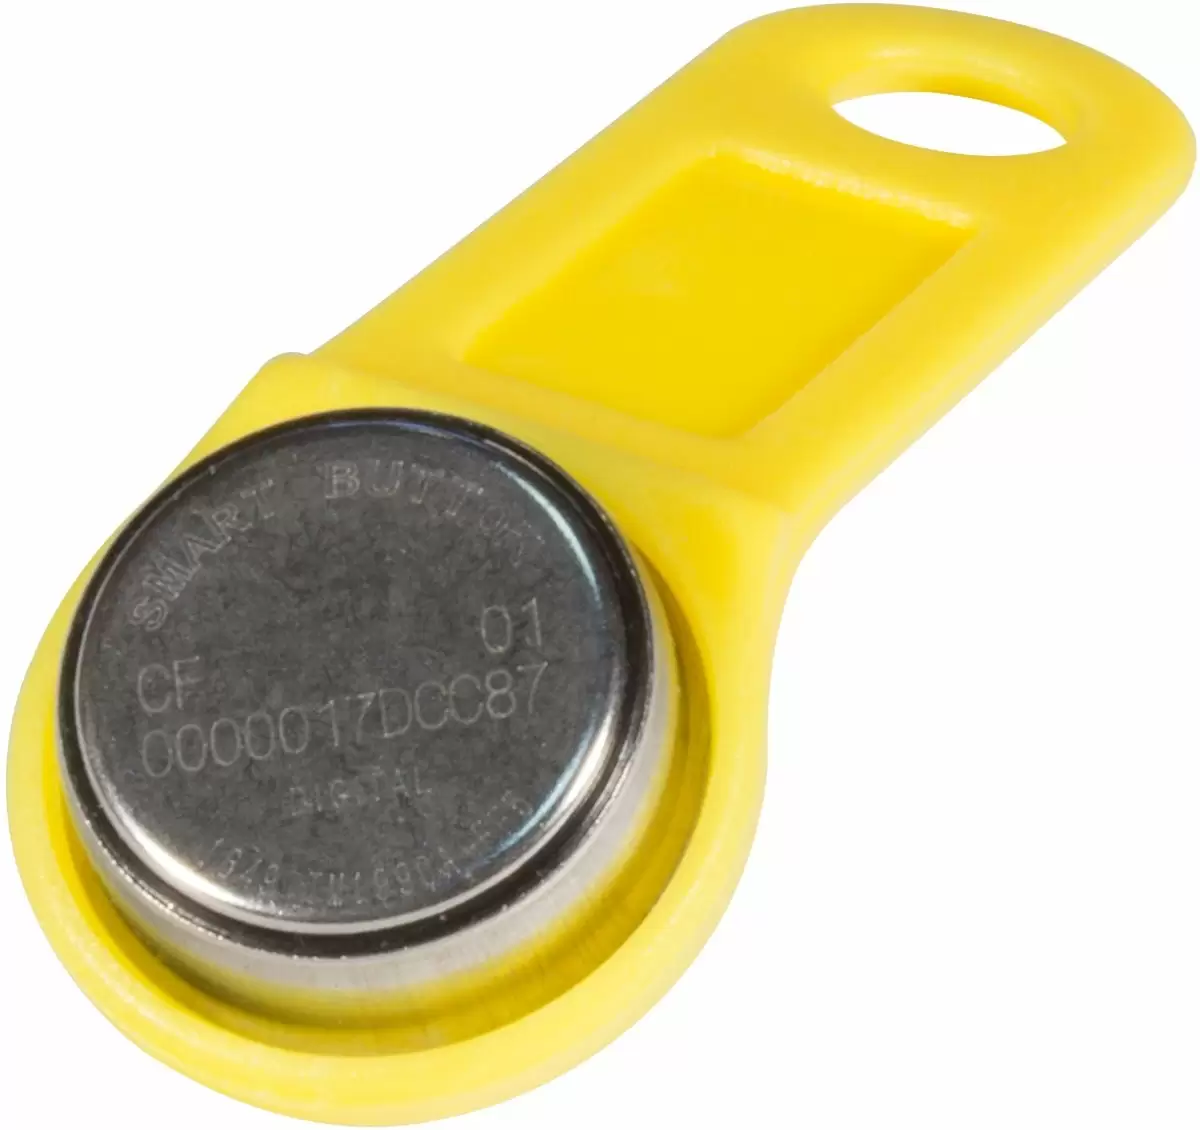 Ключ электронный Touch Memory с держателем DS 1990А-F5 (желтый)